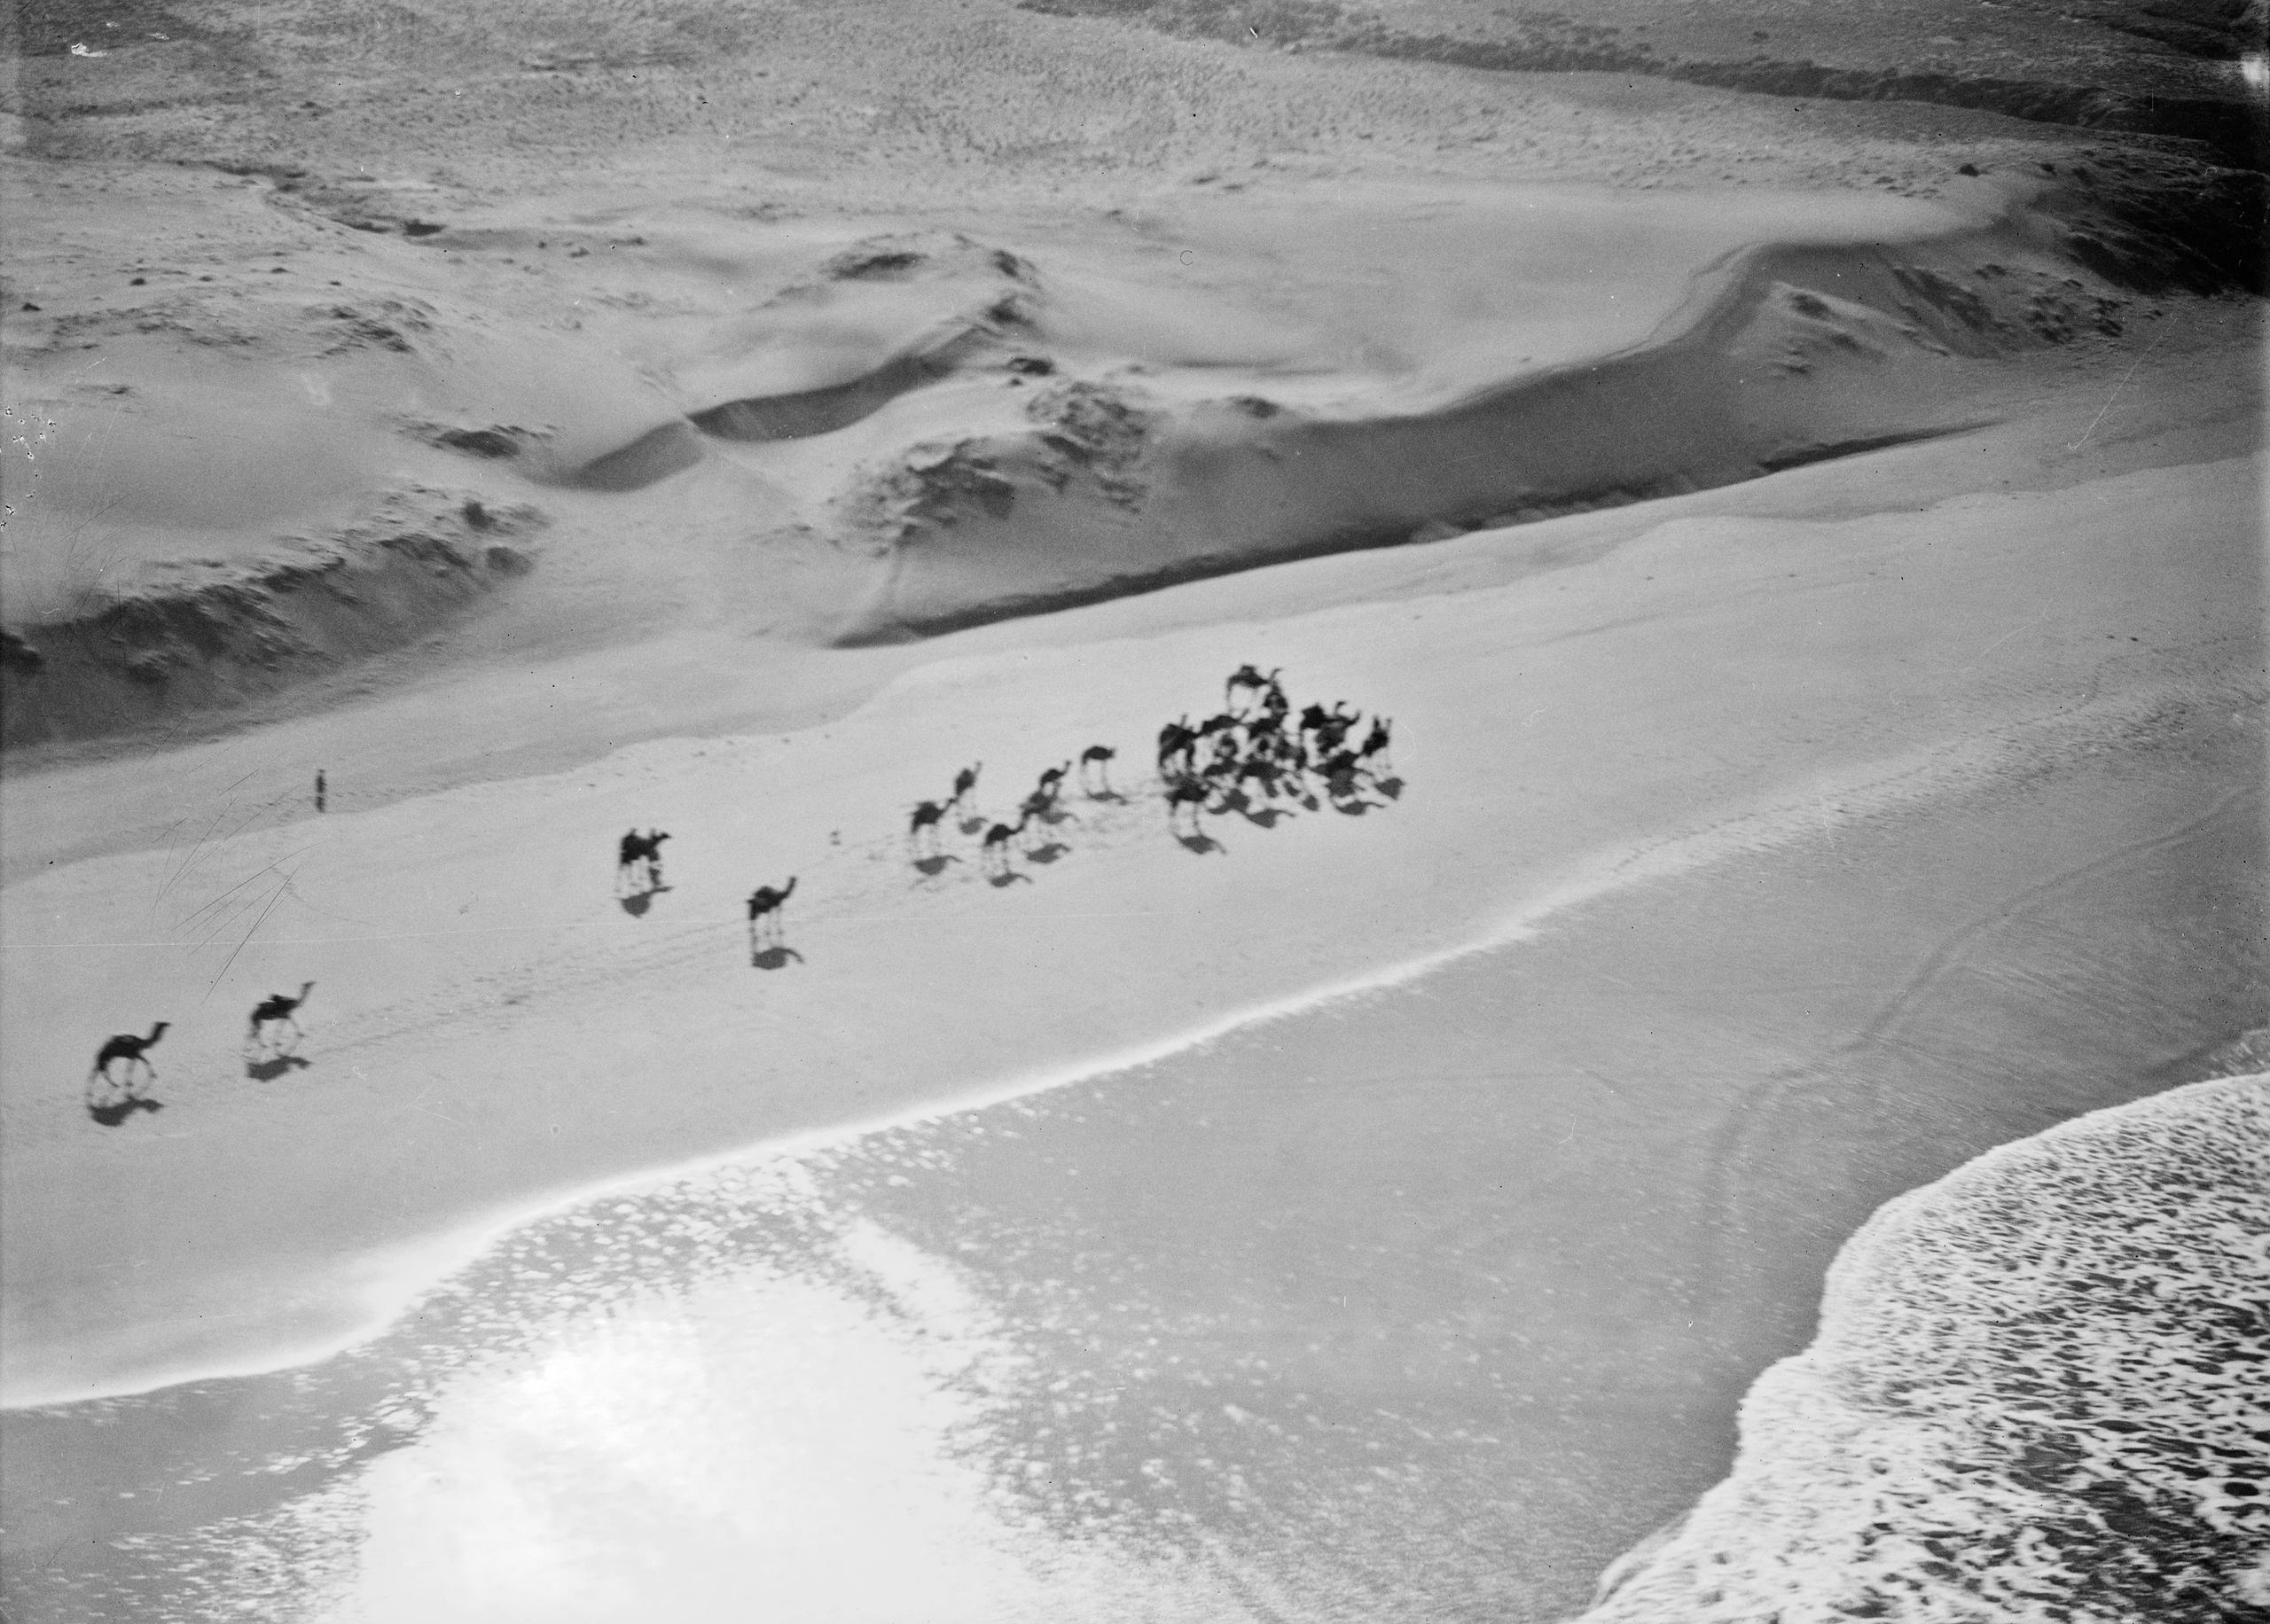 قافلة من الجمال في التقاء الصحراء بالمحيط الأطلسي في نهاية نهر تشاد، 1932. 